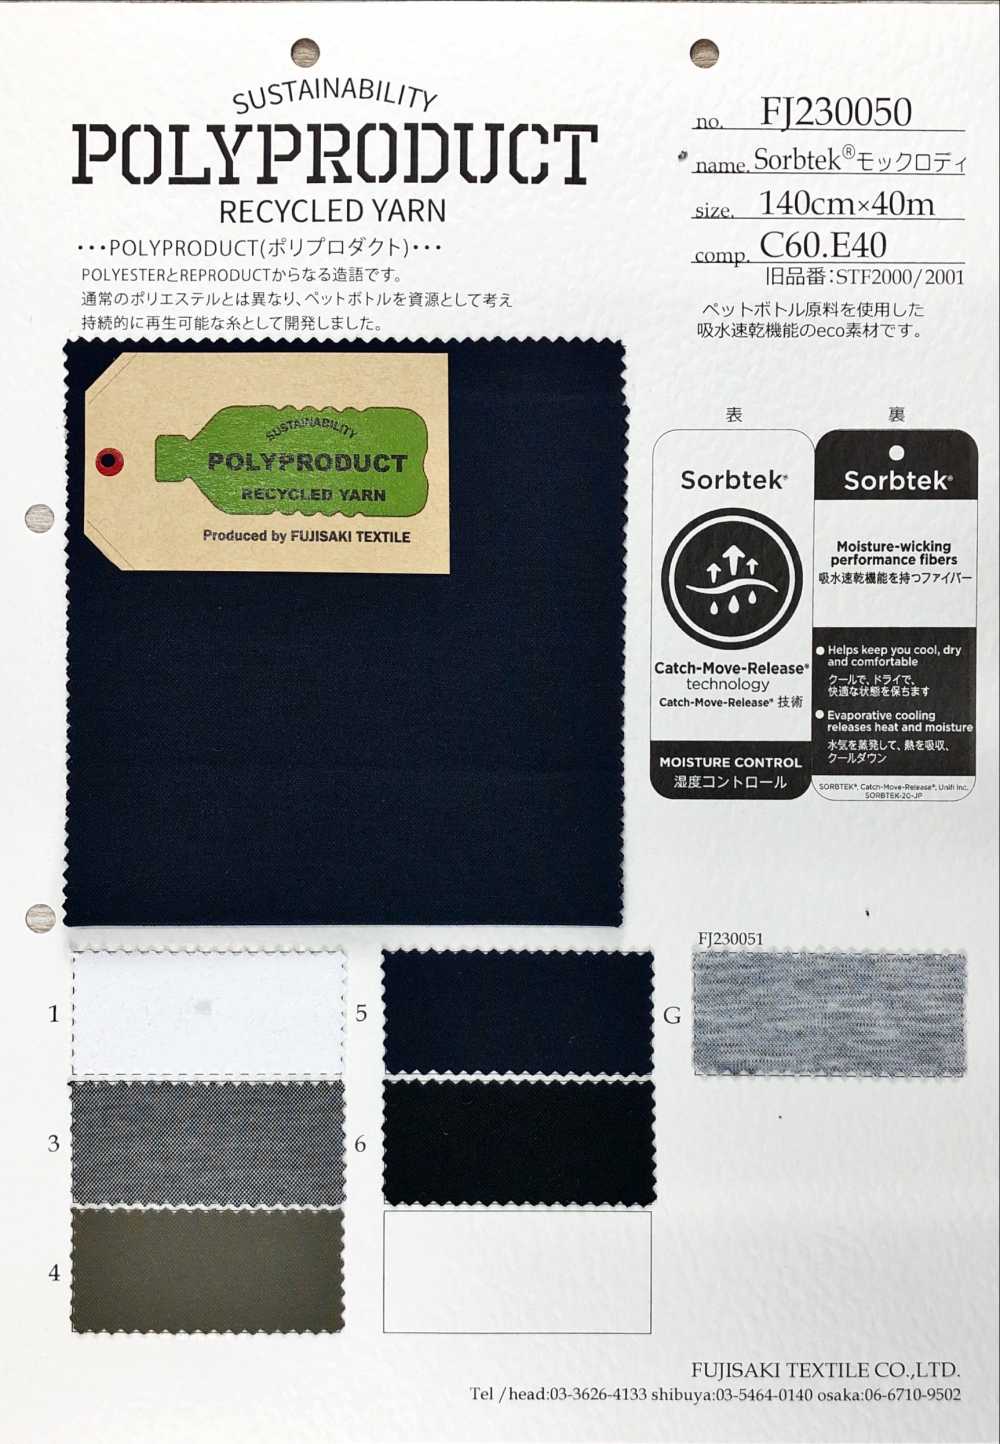 FJ230050 Sorbtek Mock Roddy[Fabrica Textil] Fujisaki Textile